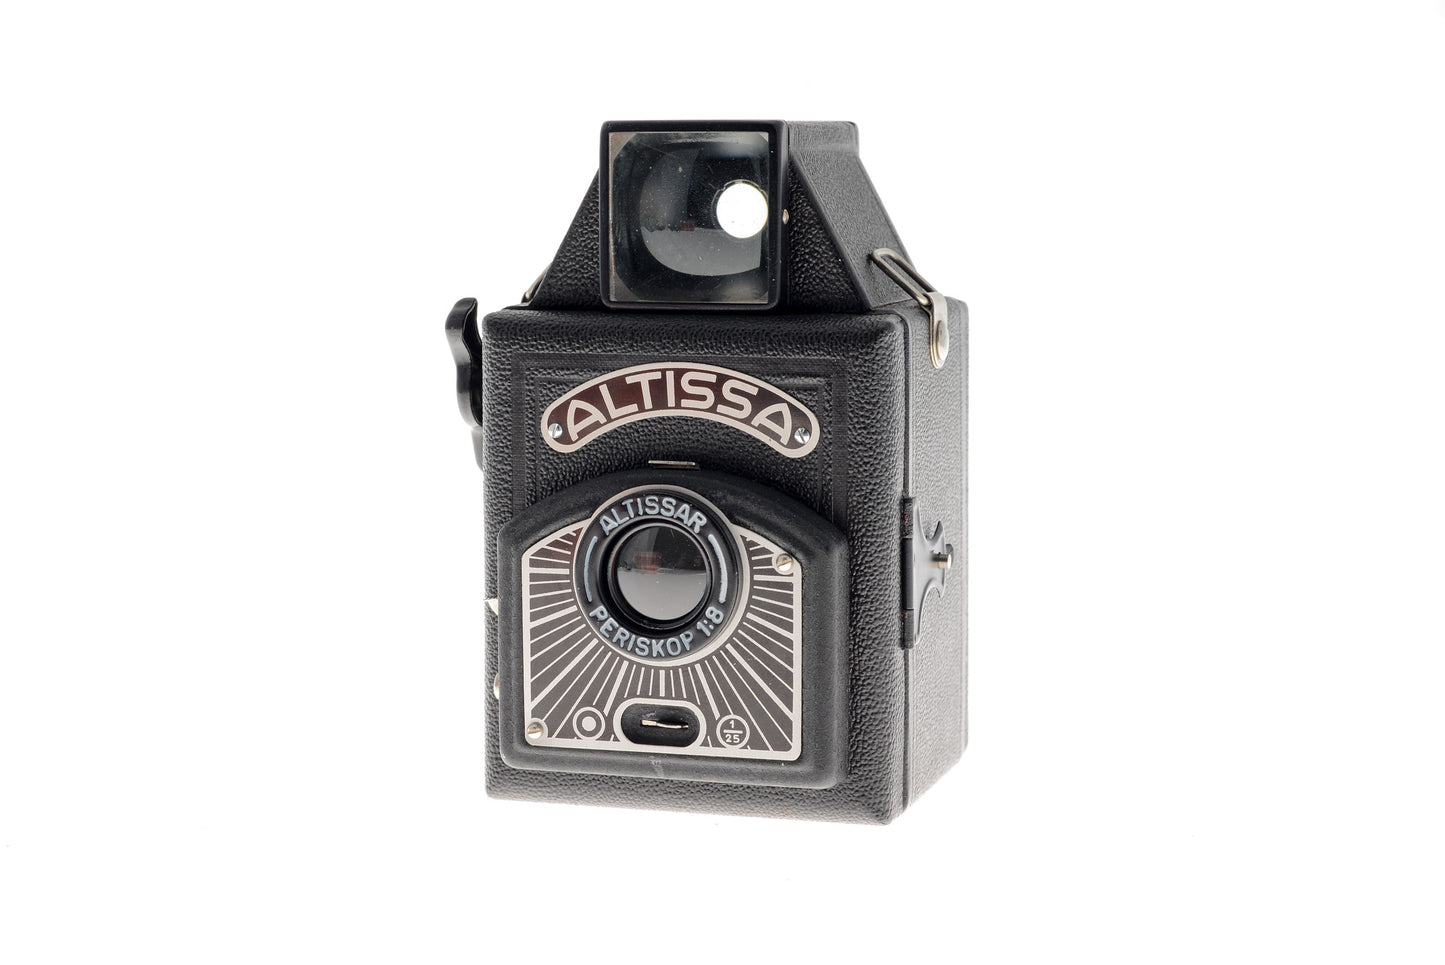 Altissa Box D - Camera